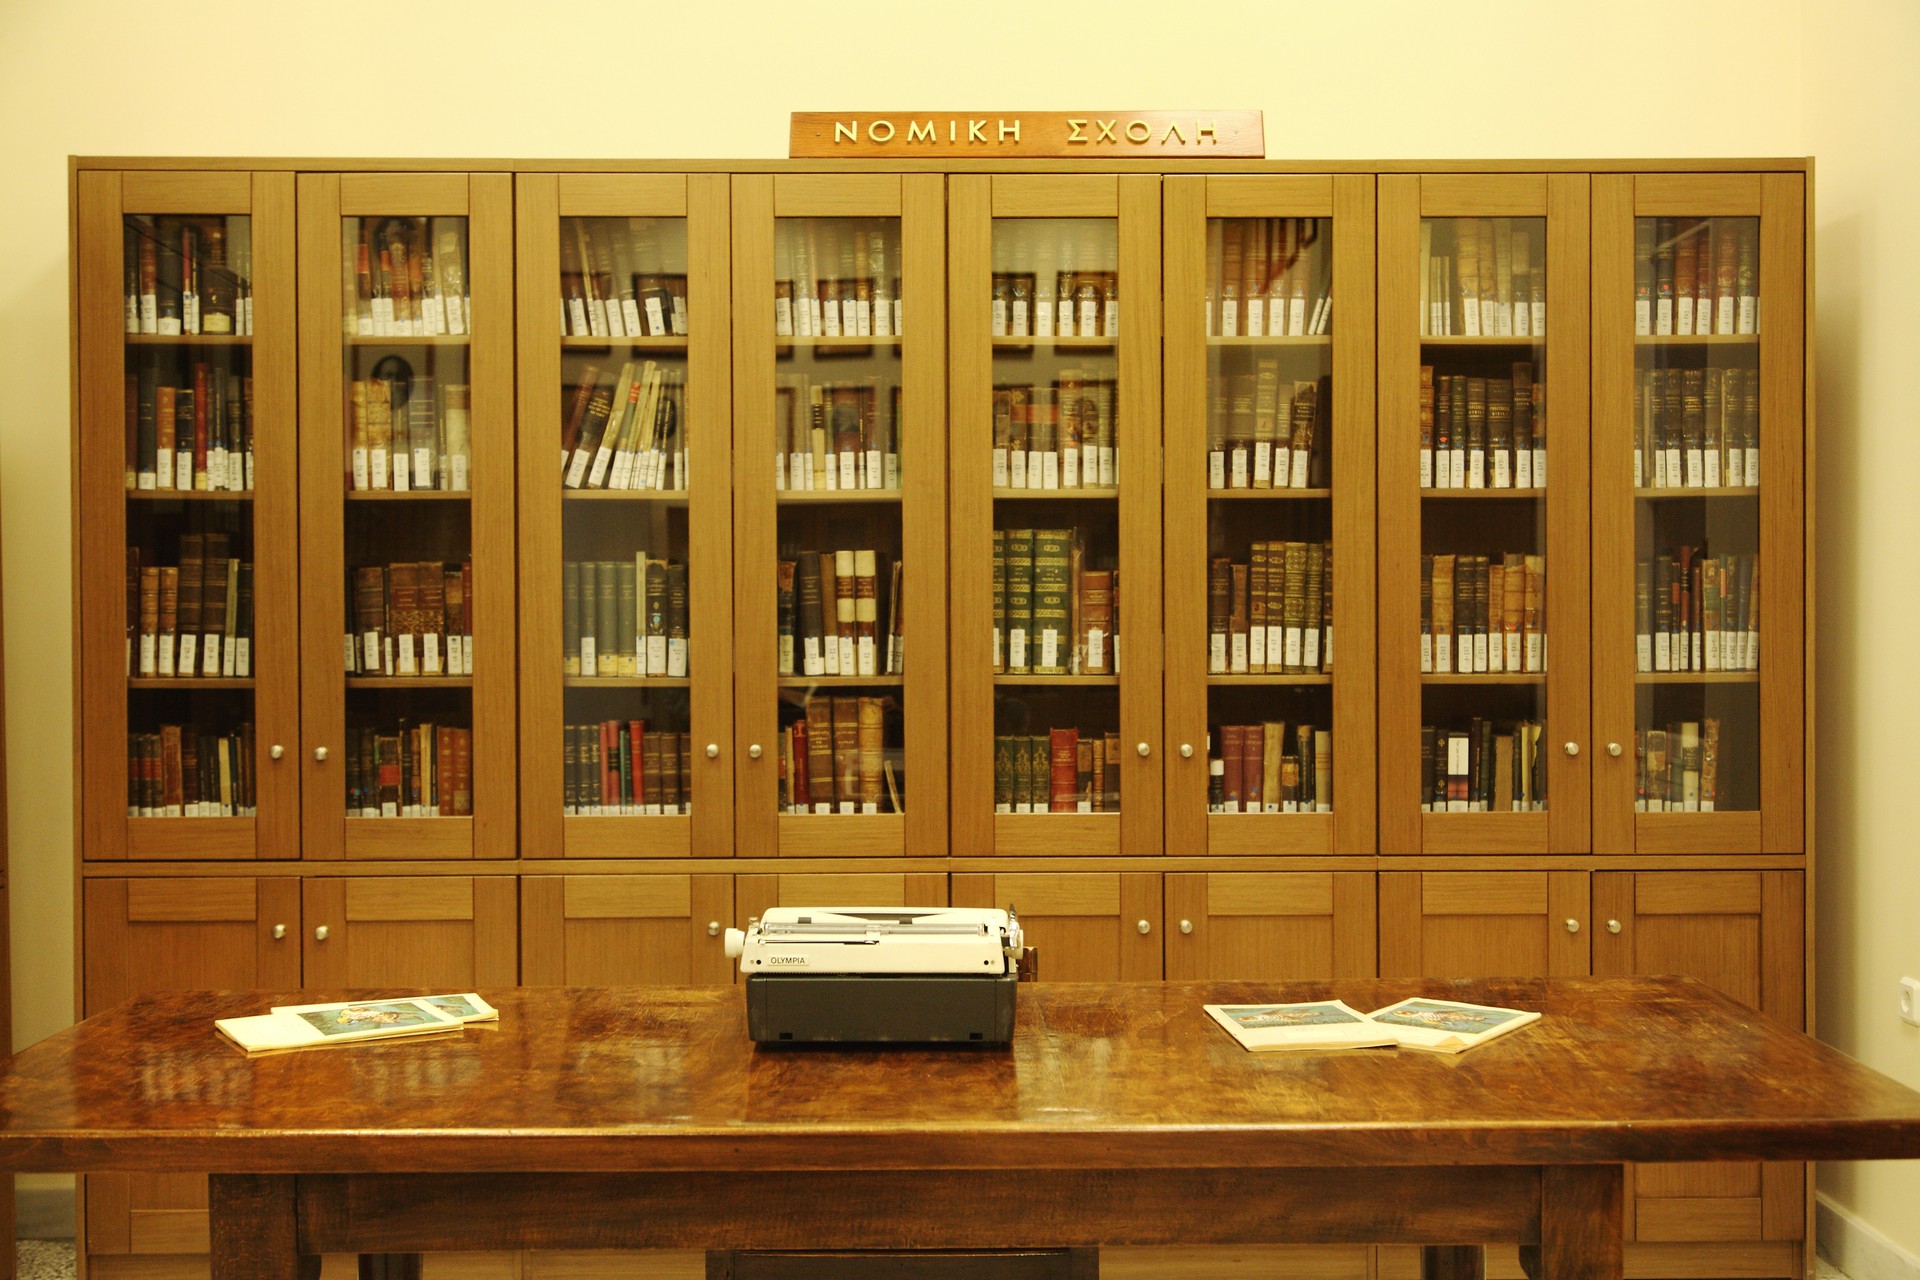 The relocation of the library of the Law School of the University of Athens at the old Chemical Laboratory Building, Athens, Greece, April 2017 / Ç ìåôåãêáôÜóôáóç ôçò âéâëéïèÞêçò ôçò íïìéêÞò ó÷ïëÞò ôïõ Ðáíåðéóôçìßïõ Áèçíþí, óôï êôßñéï ôïõ ðáëáéïý ×çìåßïõ, ÁèÞíá, Áðñßëéïò 2017